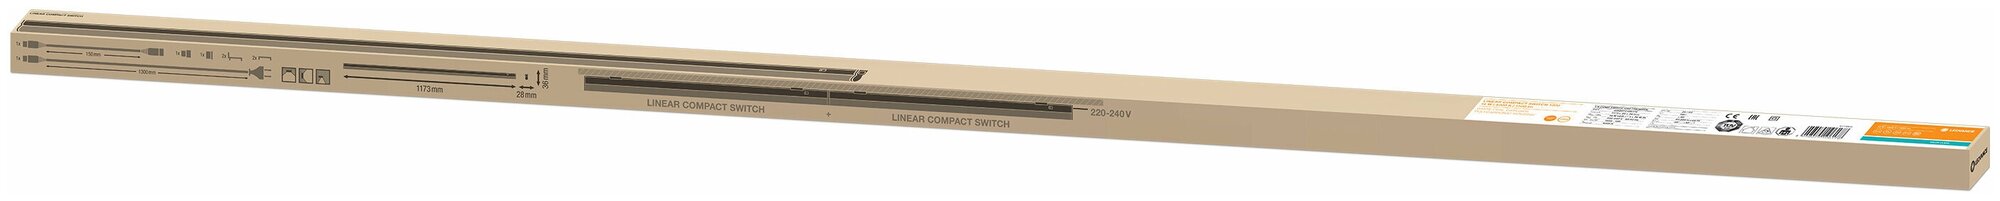 LN COMP SWITCH 1200 14W/4000K 1400lm 230V IP20 1173x28x36 - лин. LED св-к